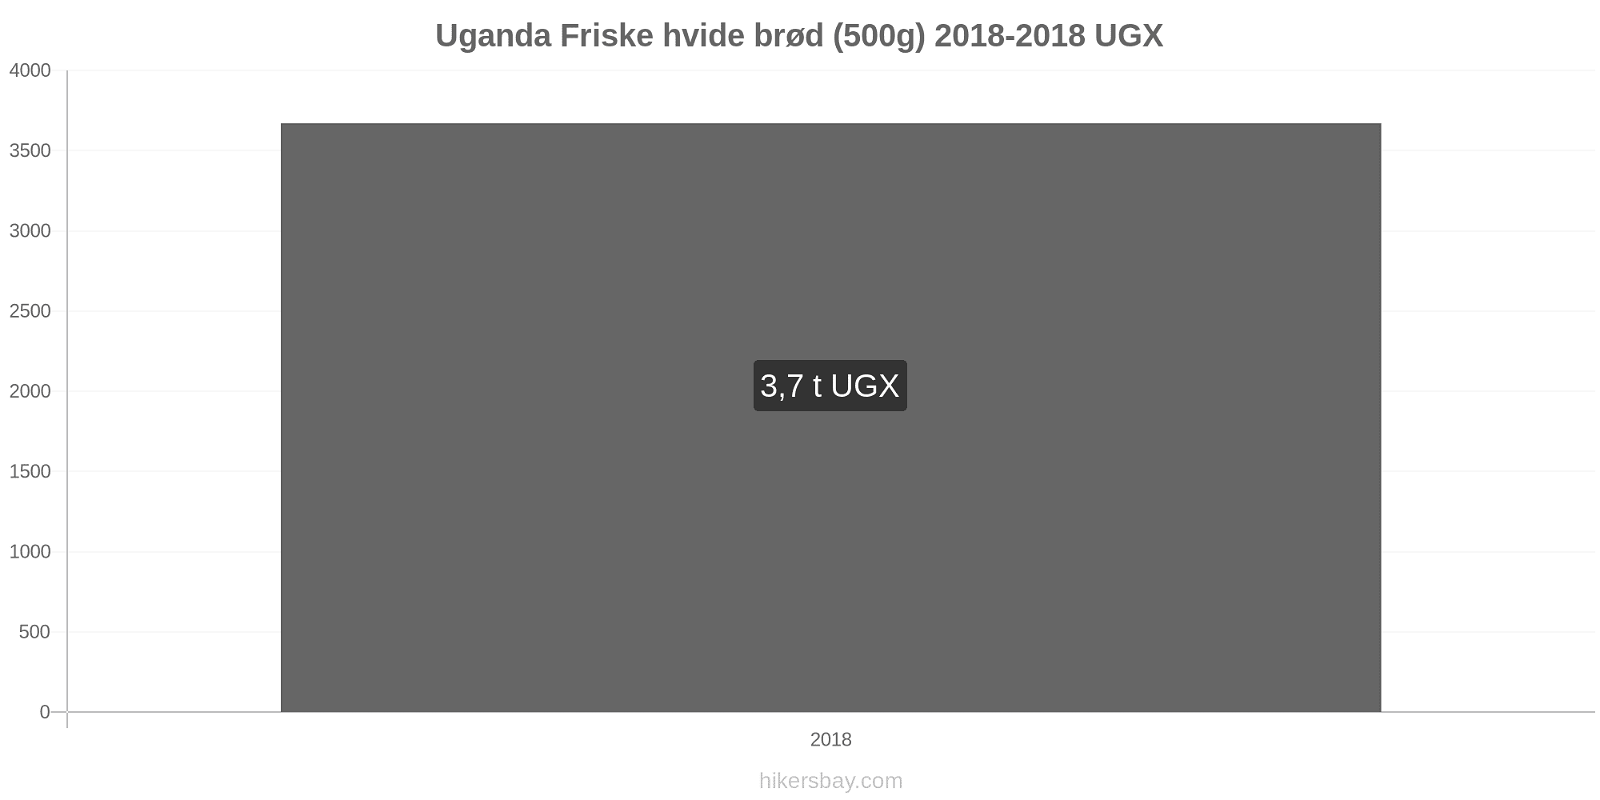 Uganda prisændringer Friske hvide brød (500g) hikersbay.com